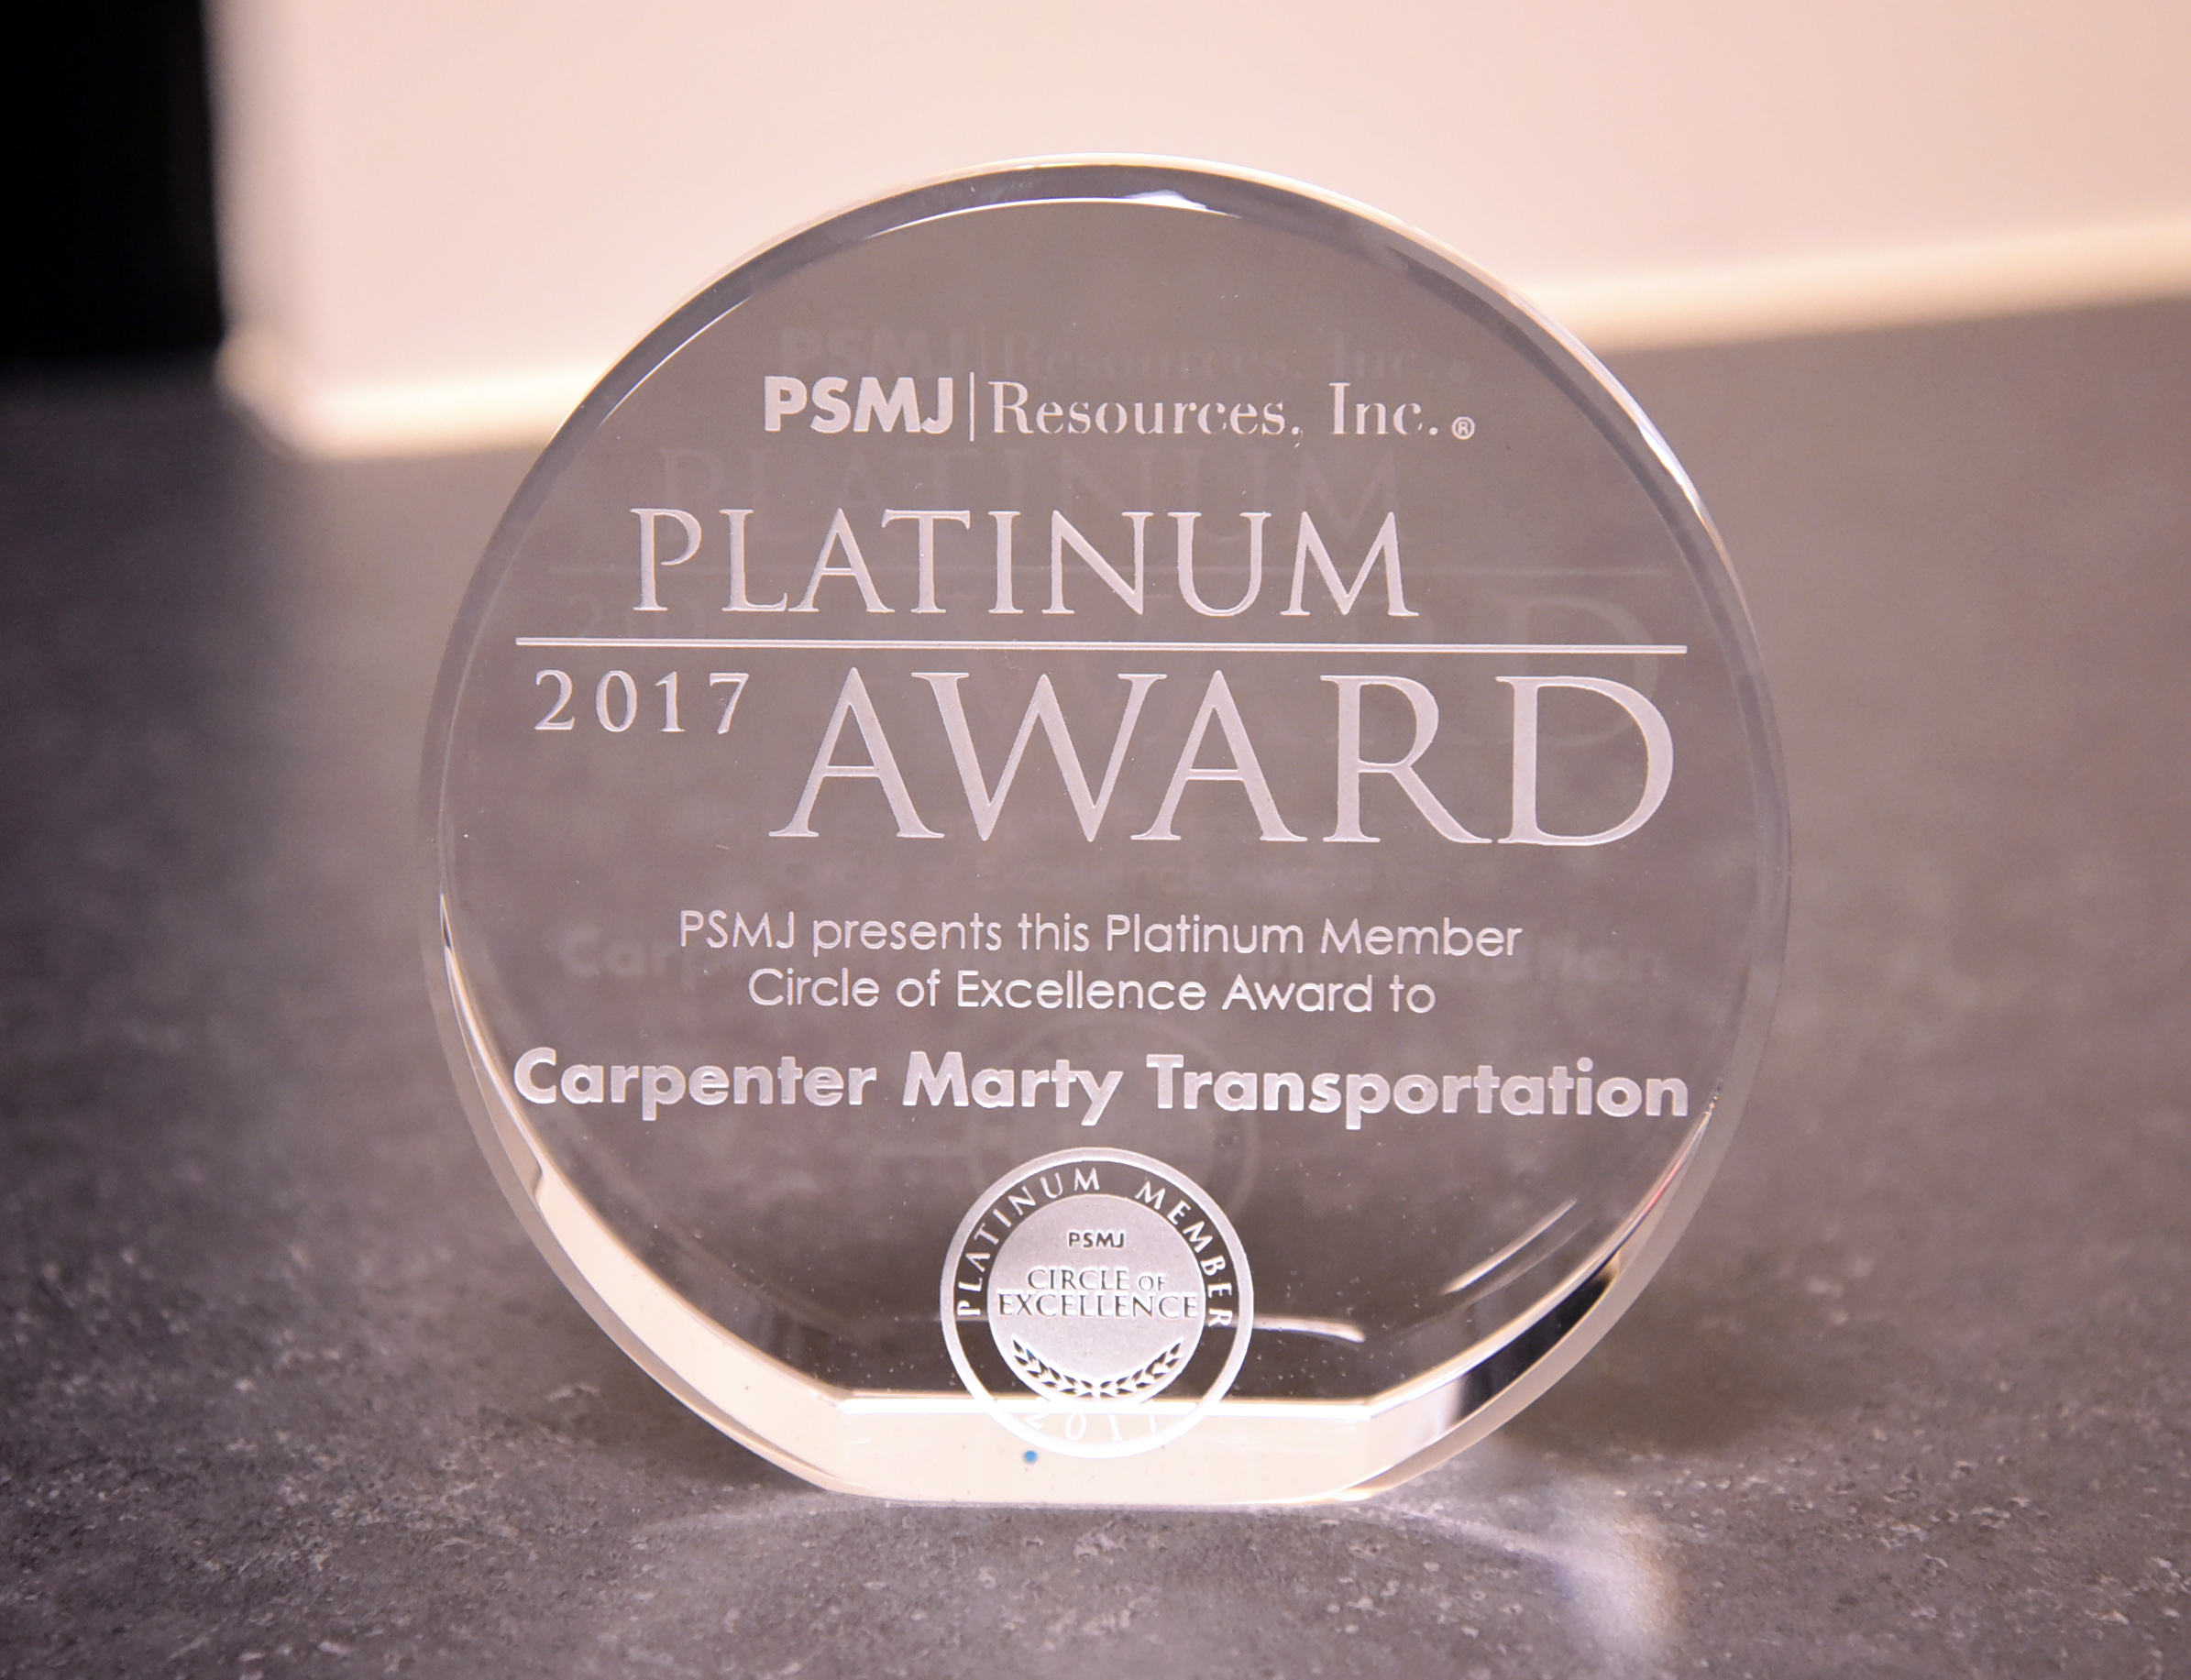 PSMJ Platinum Award 2017